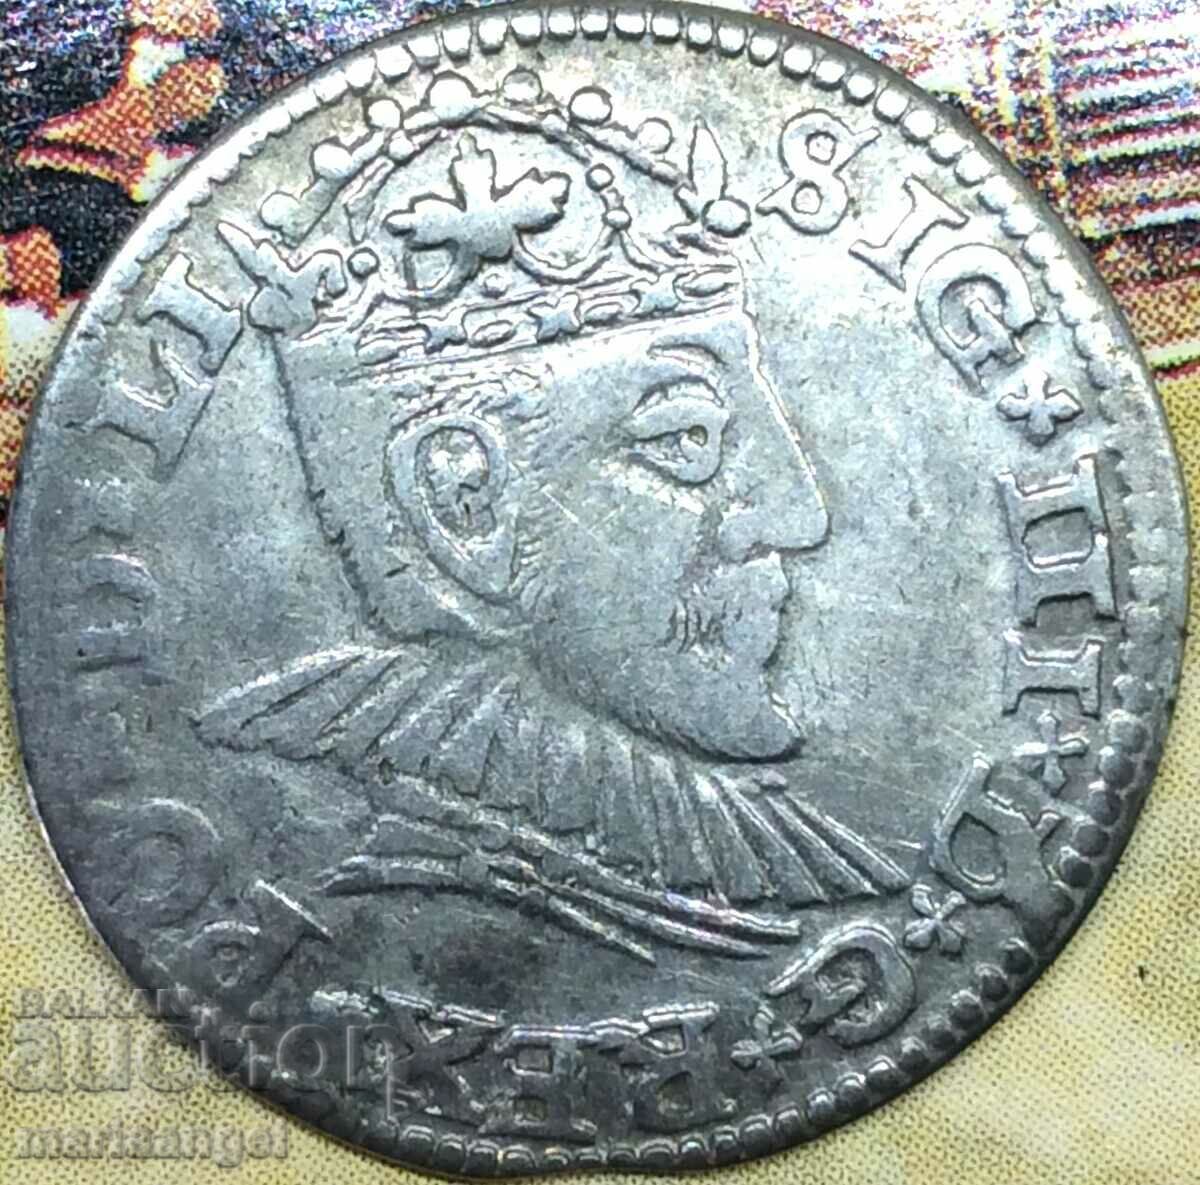 Полша 3 гроша (трояк) 1590 Сигизмунд III сребро - рядка